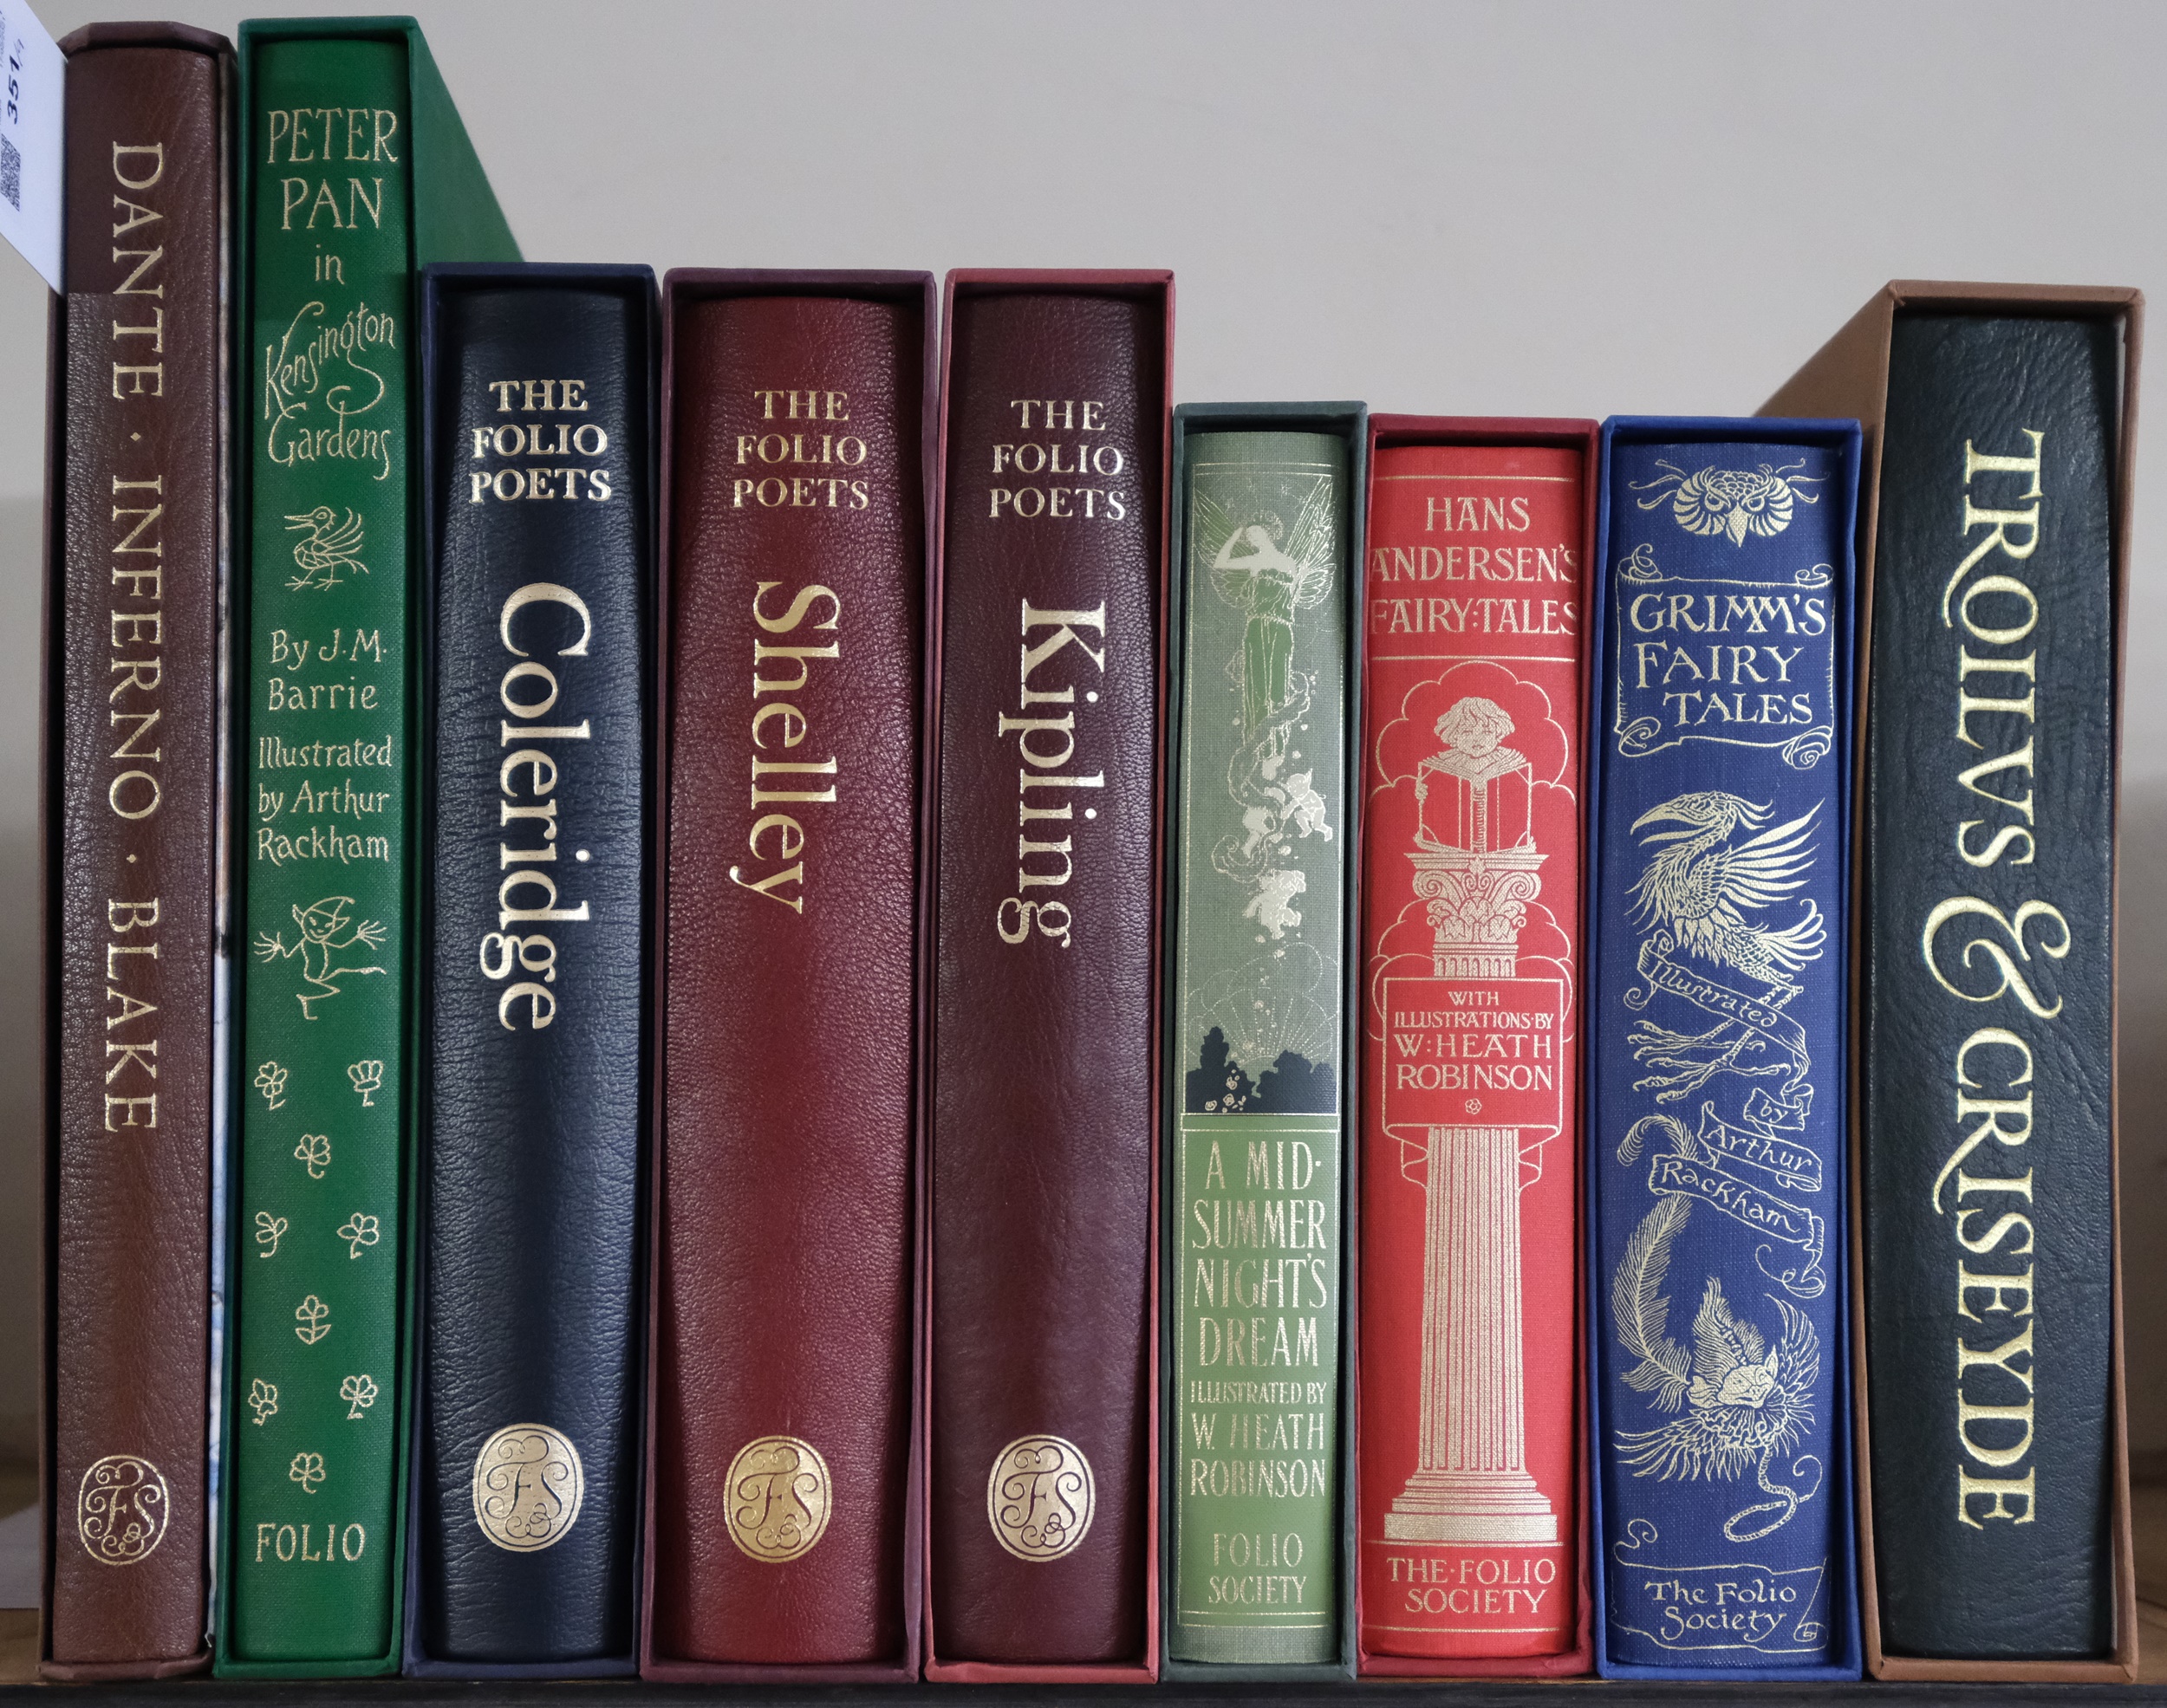 Folio Society. 9 volumes